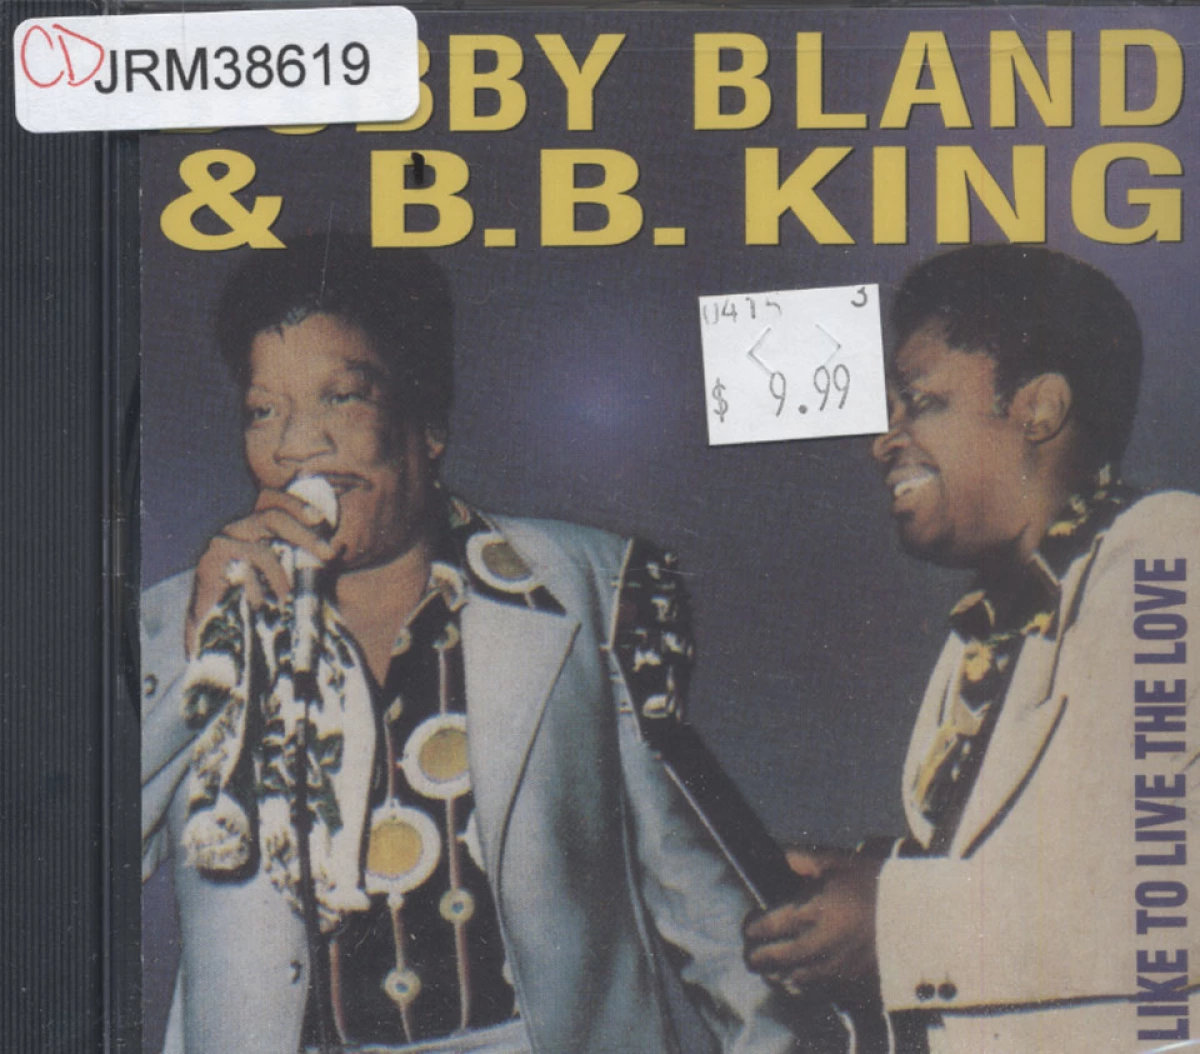 Bobby Bland  King CD, 1993 at Wolfgang's